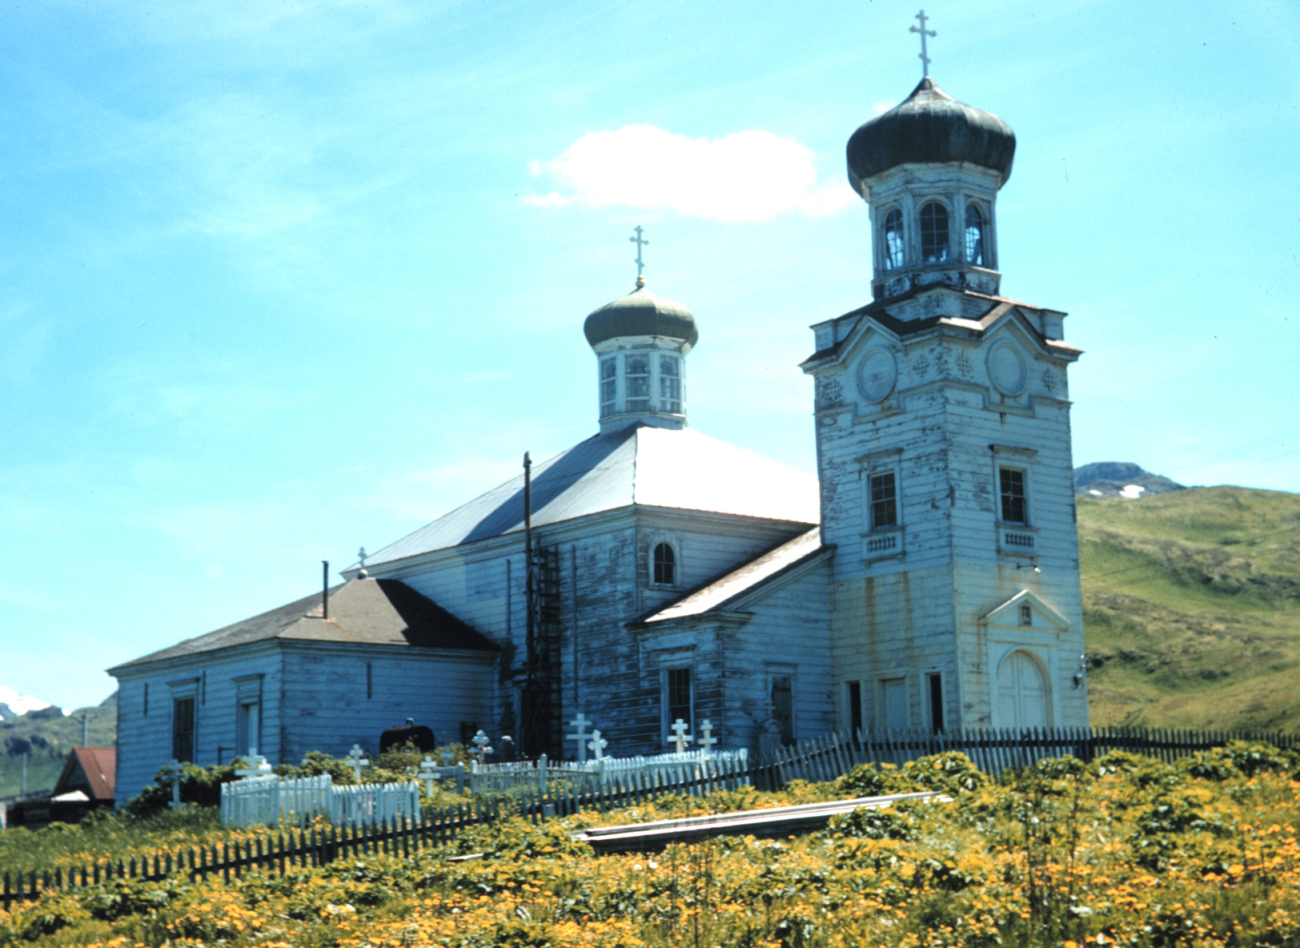 The Russian Orthodox Church at Unalaska